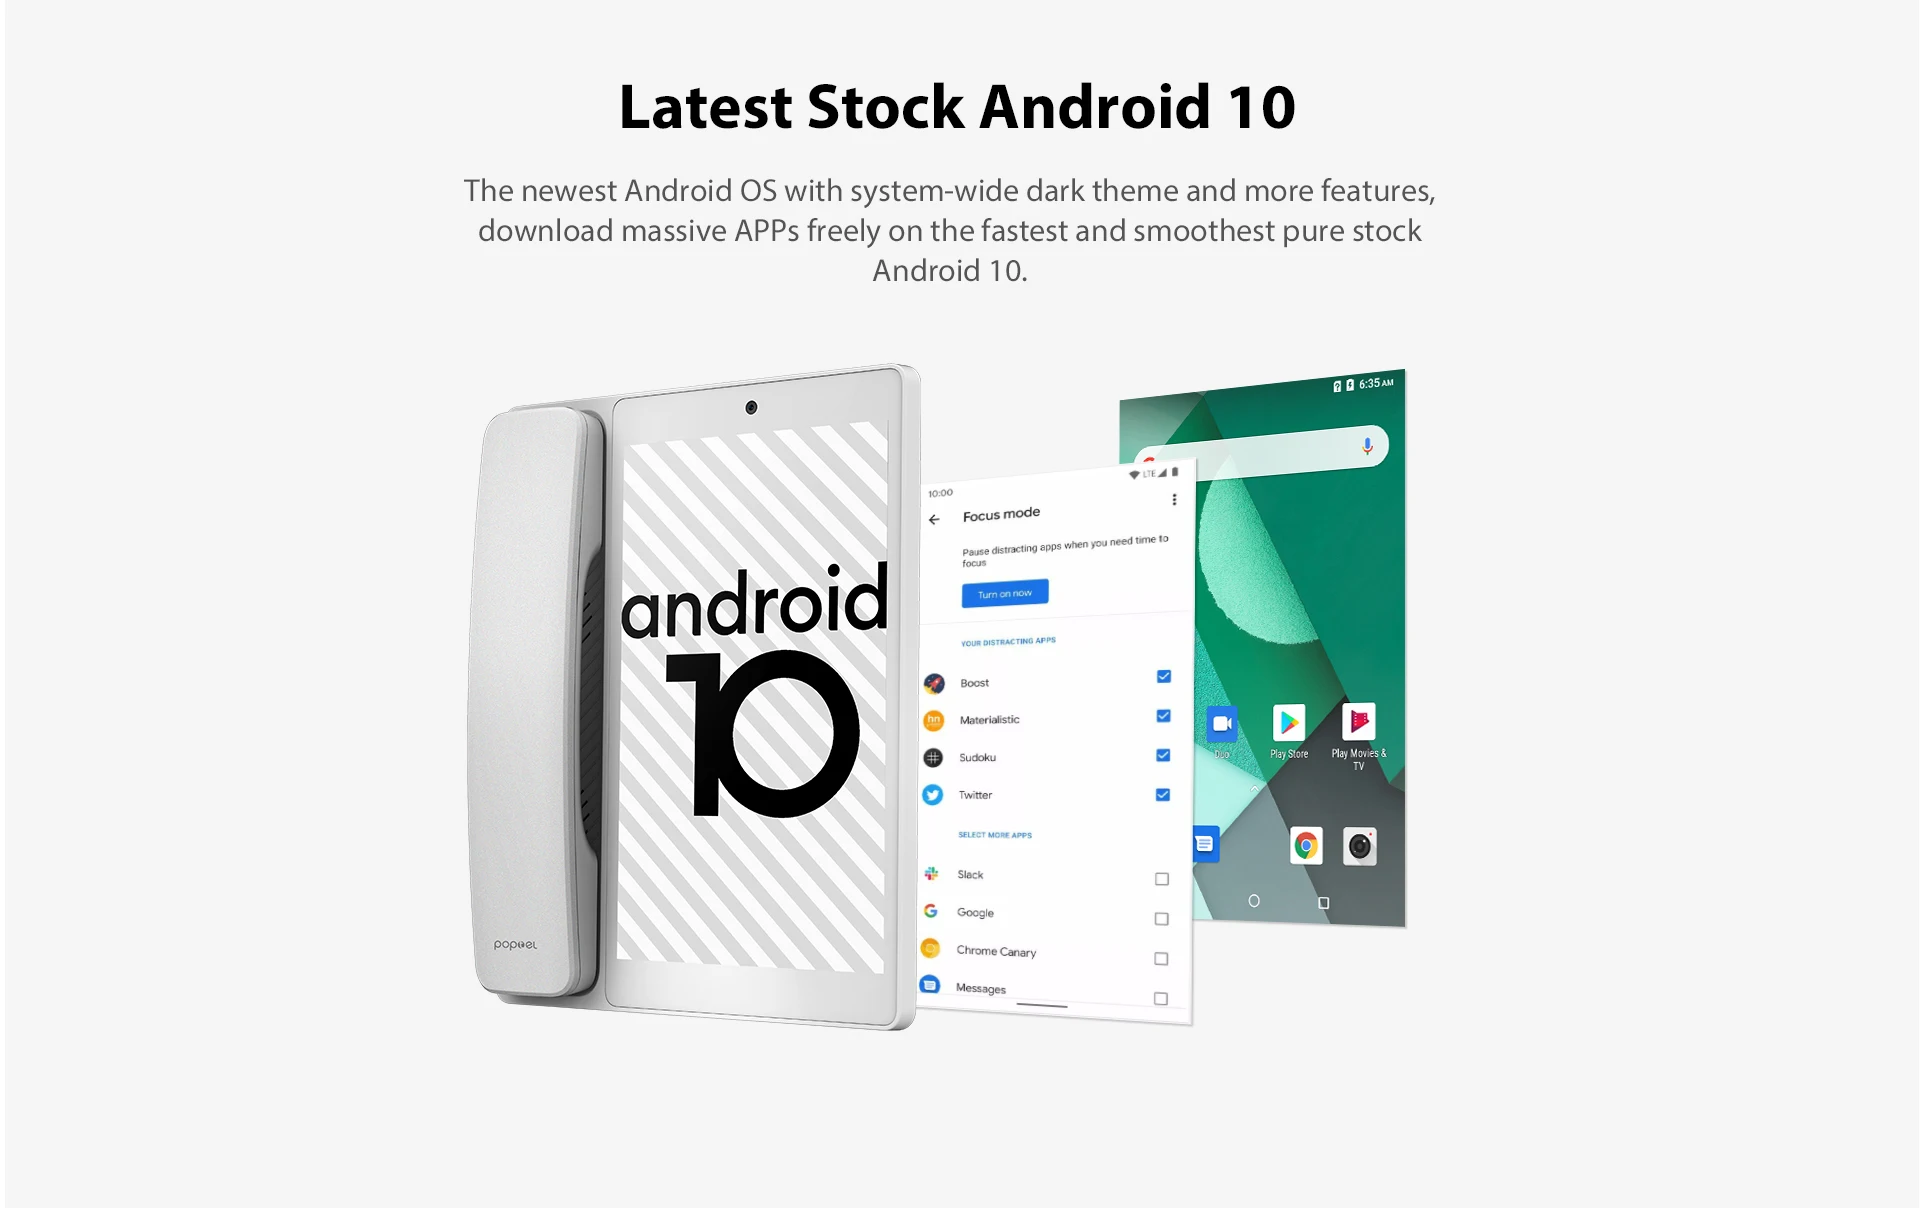 Poptel — téléphone portable V10, tablette intelligente, Android 10.0, Google Play Store, 2 go/16 go, avec carte SIM, 8 pouces